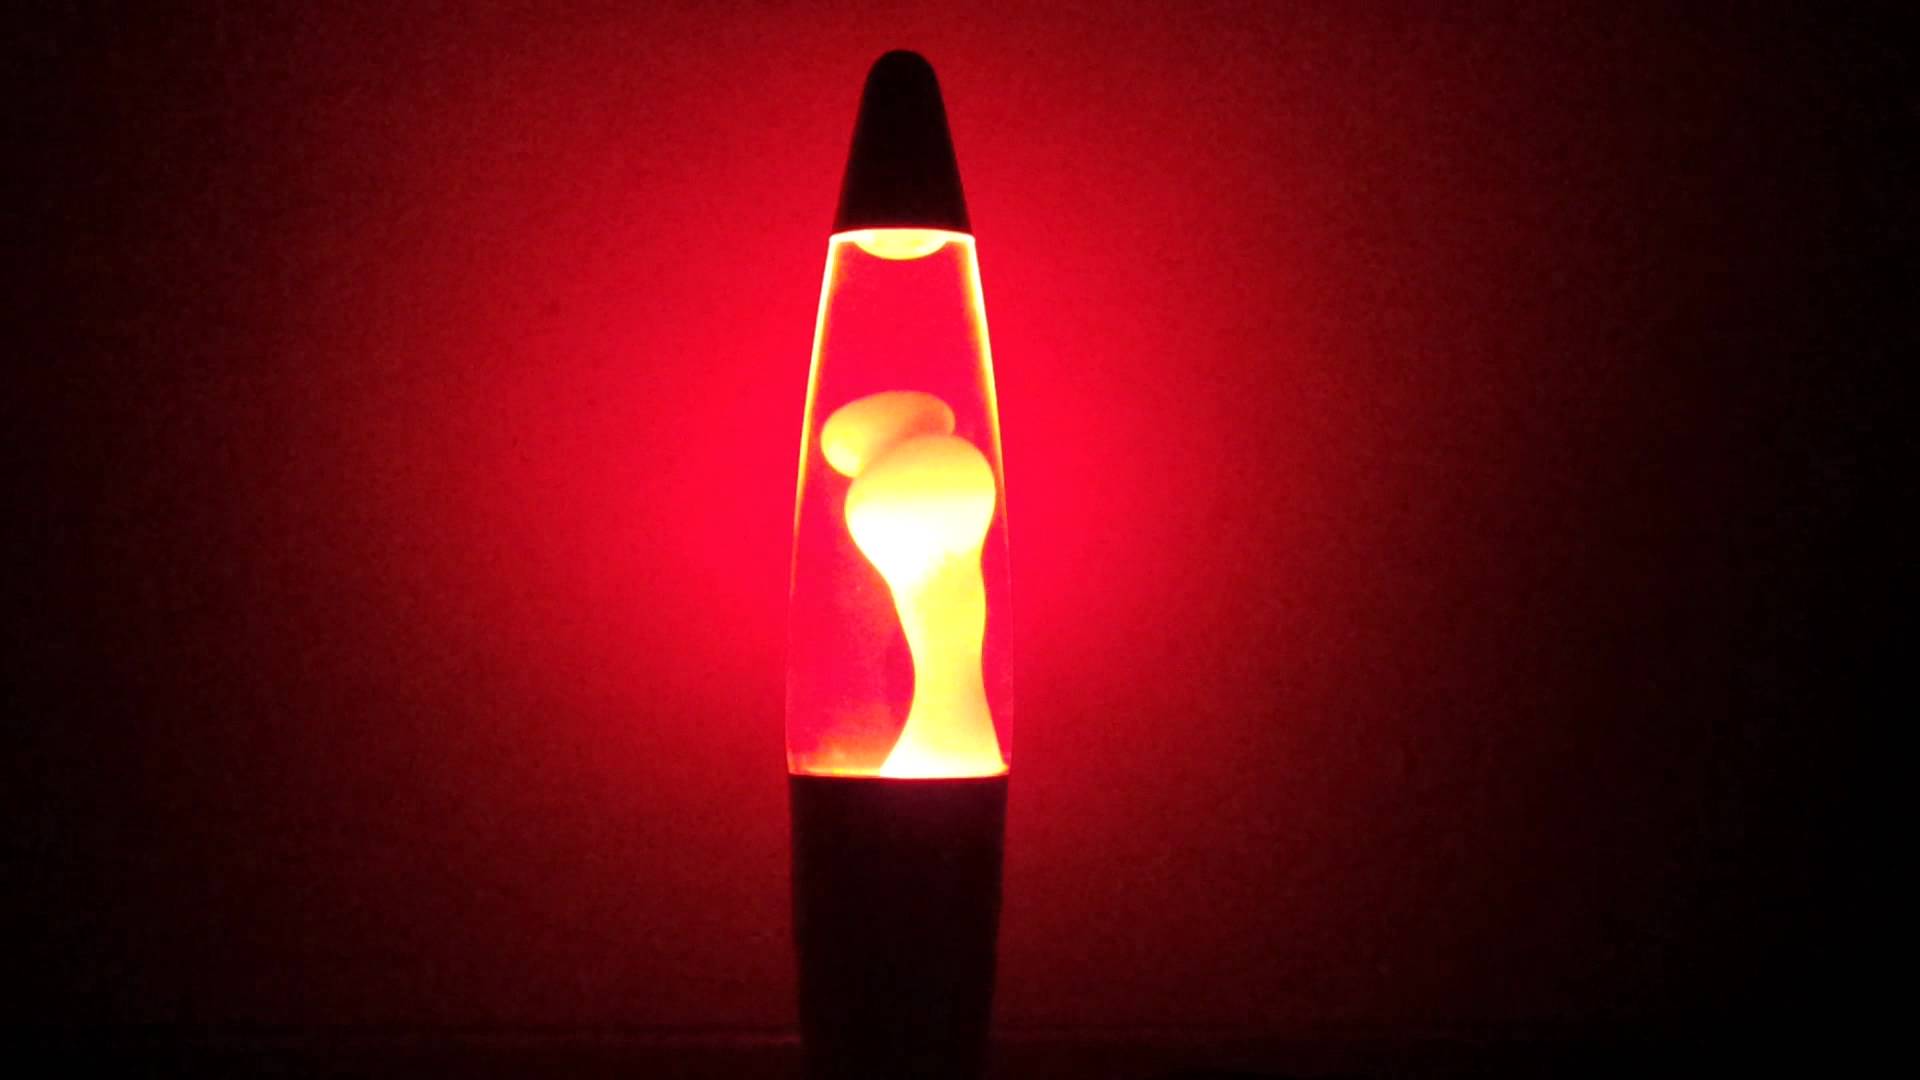 Https cub red download. Лава лэмп. Лавовая лампа. Лава лампа в темноте. Лампа с жидкостью внутри.